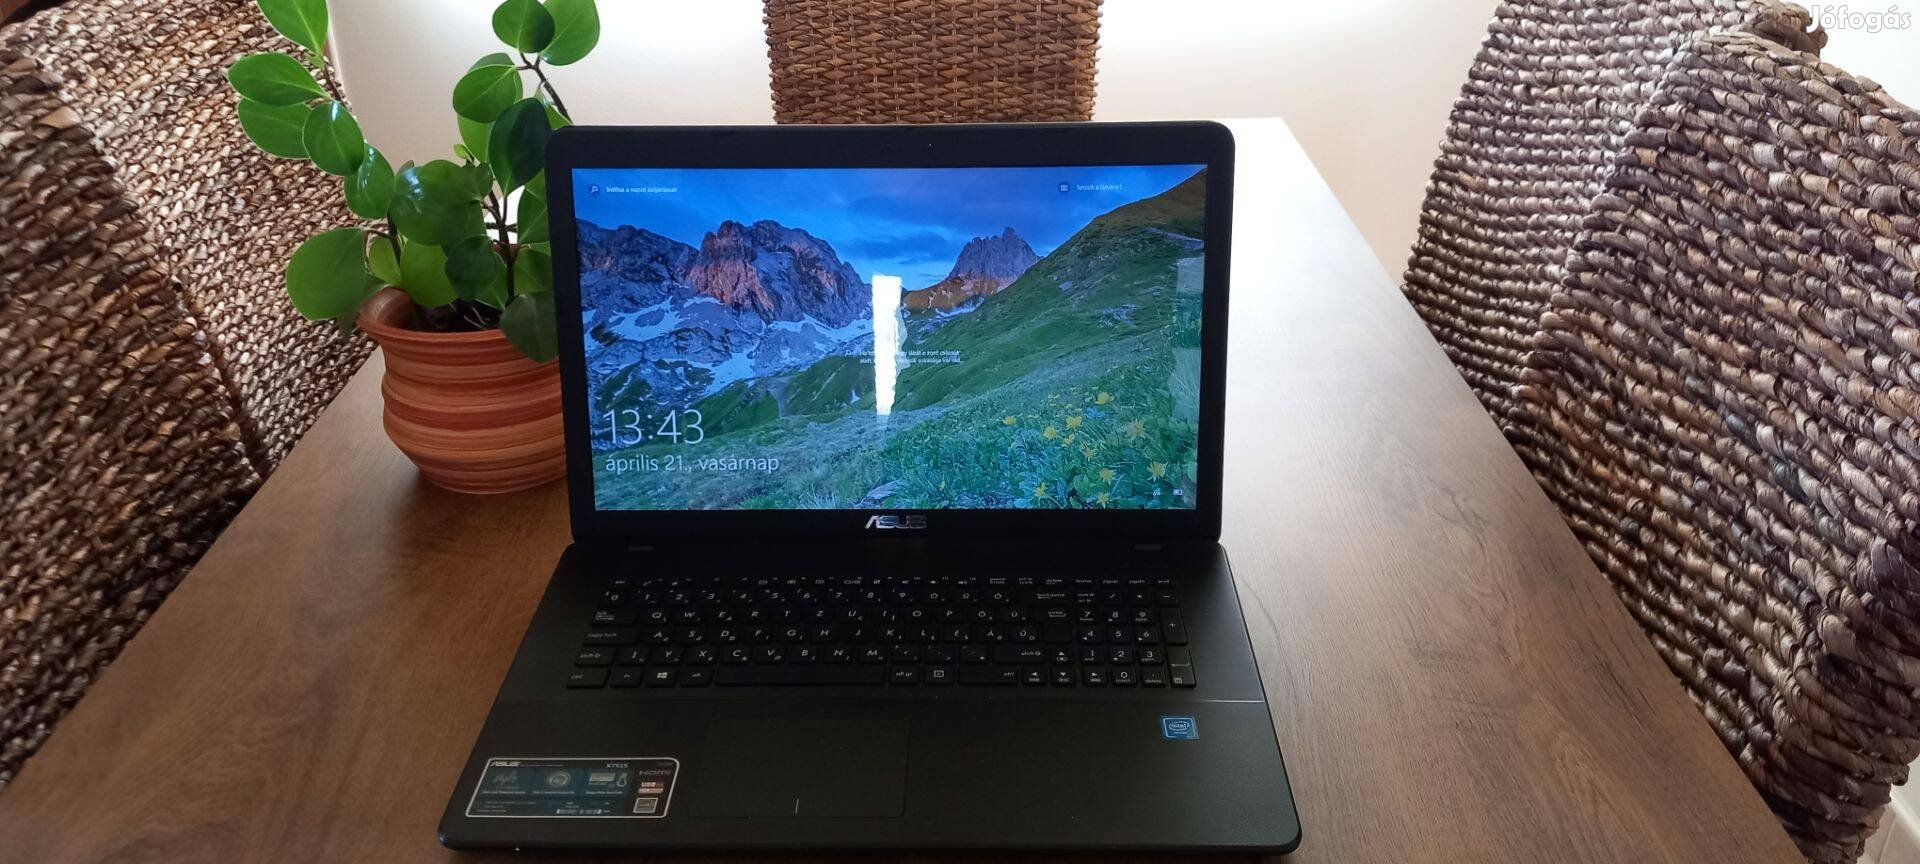 Asus X751S nagyképernyős laptop eladó